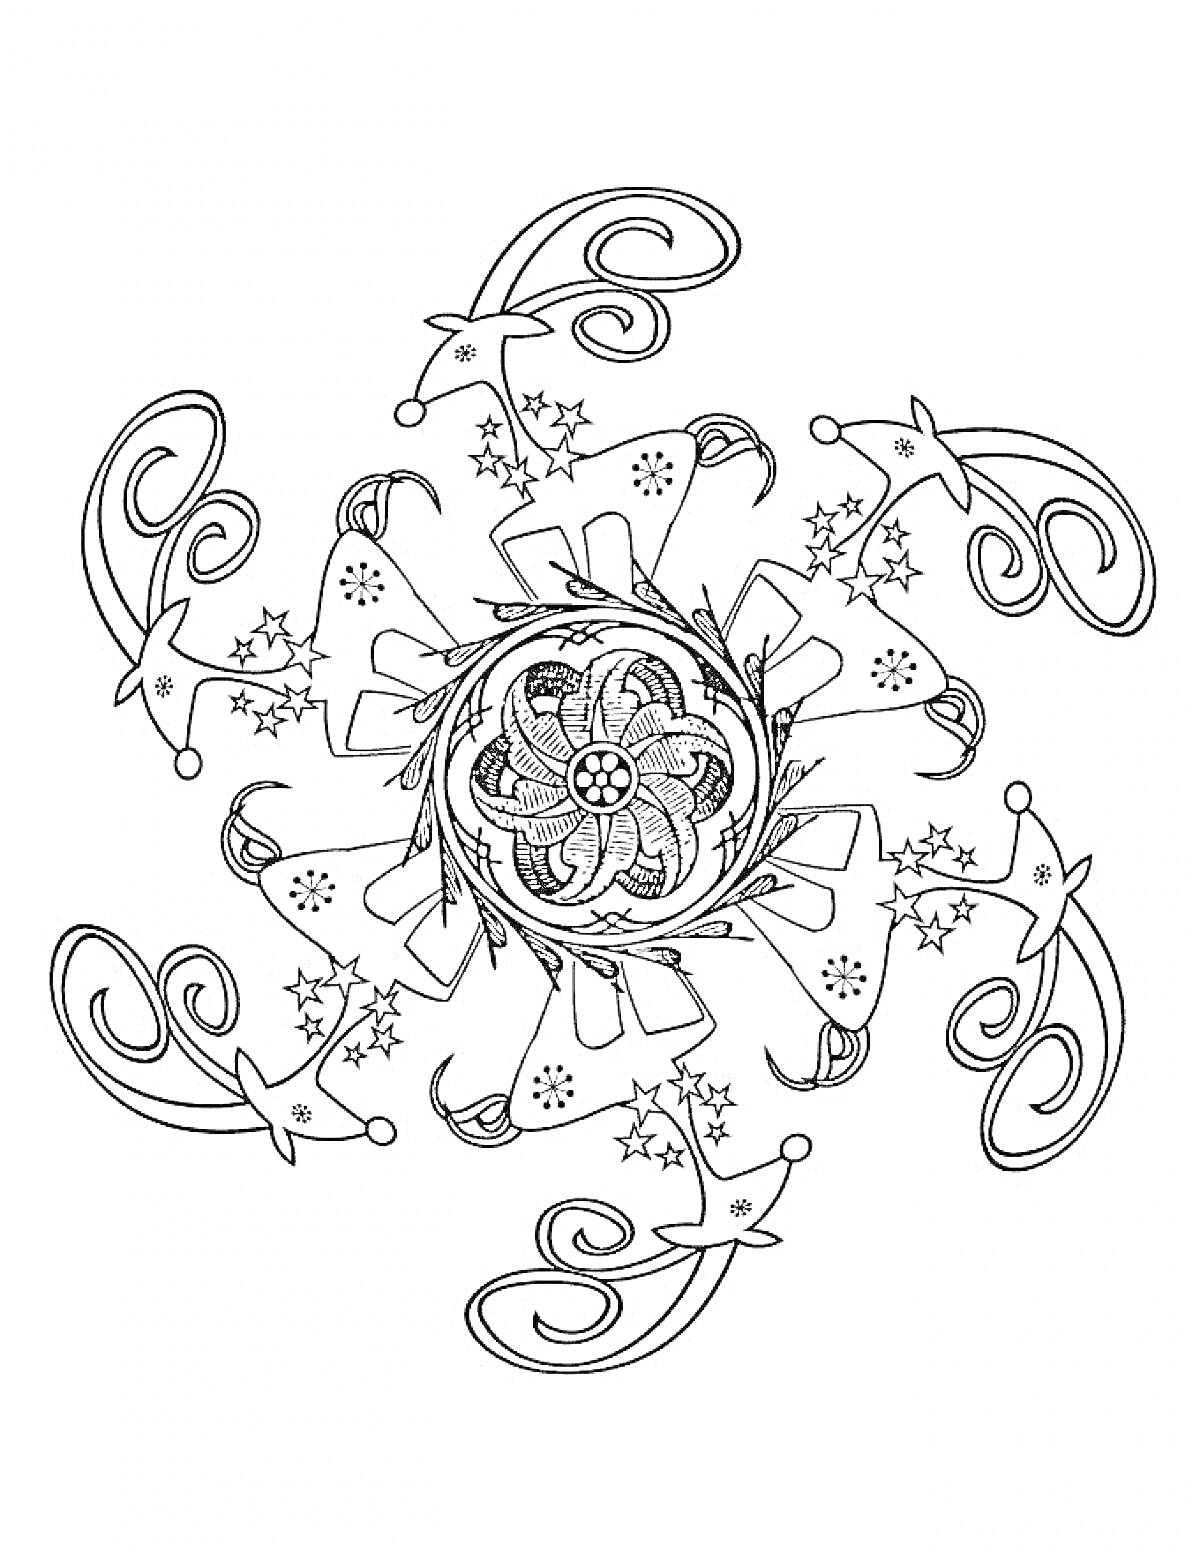 Раскраска Мандала с новогодними звездами, крючками и декоративными узорами